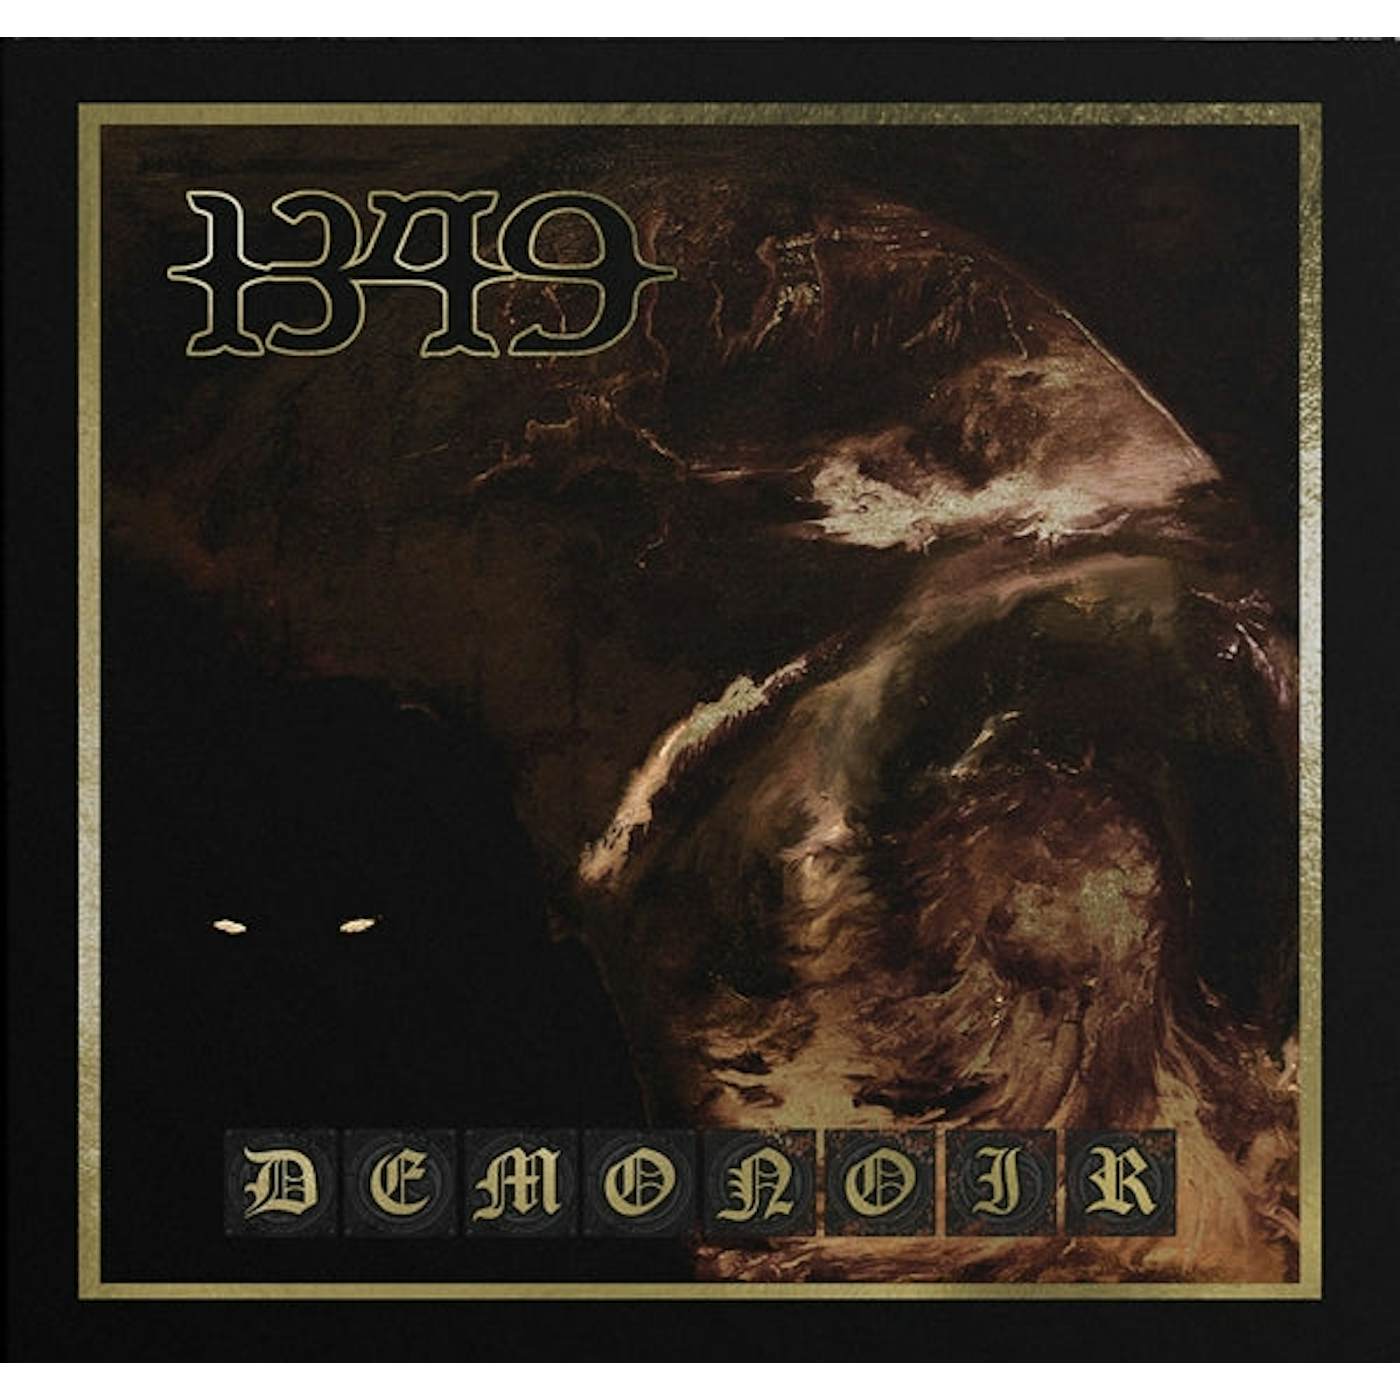 1349 LP - Demonoir (Special Edition Gold Vinyl)